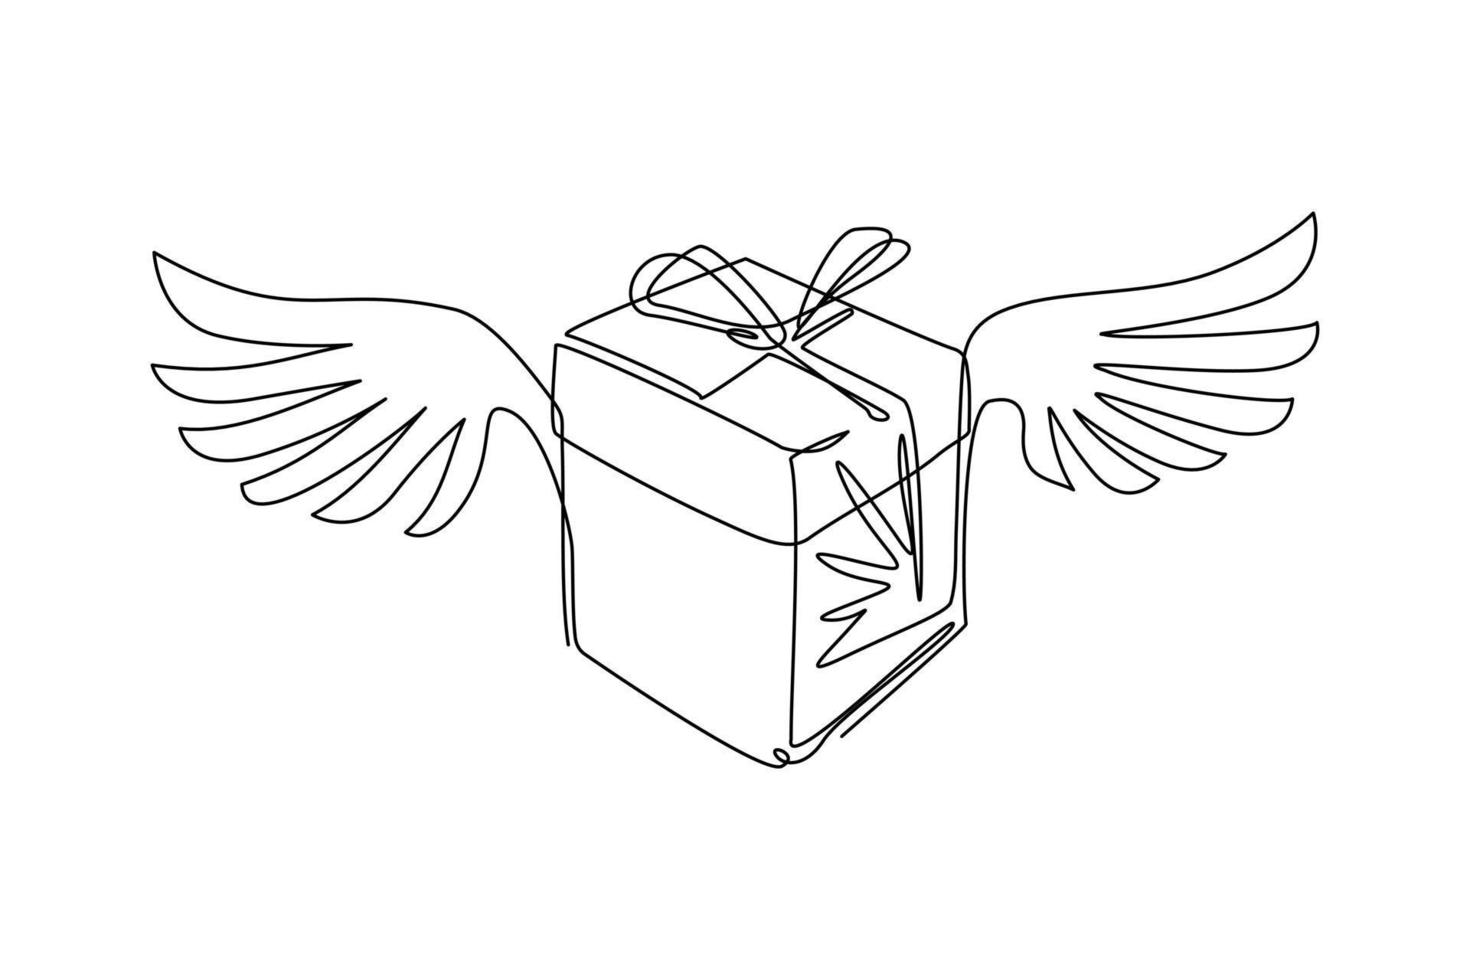 confezione regalo con disegno a linea continua che vola con il logo delle ali piumate. simbolo dell'icona del contenitore di regalo alato. scatola regalo volante con fiocco rosso e nastro. illustrazione grafica vettoriale di disegno a linea singola